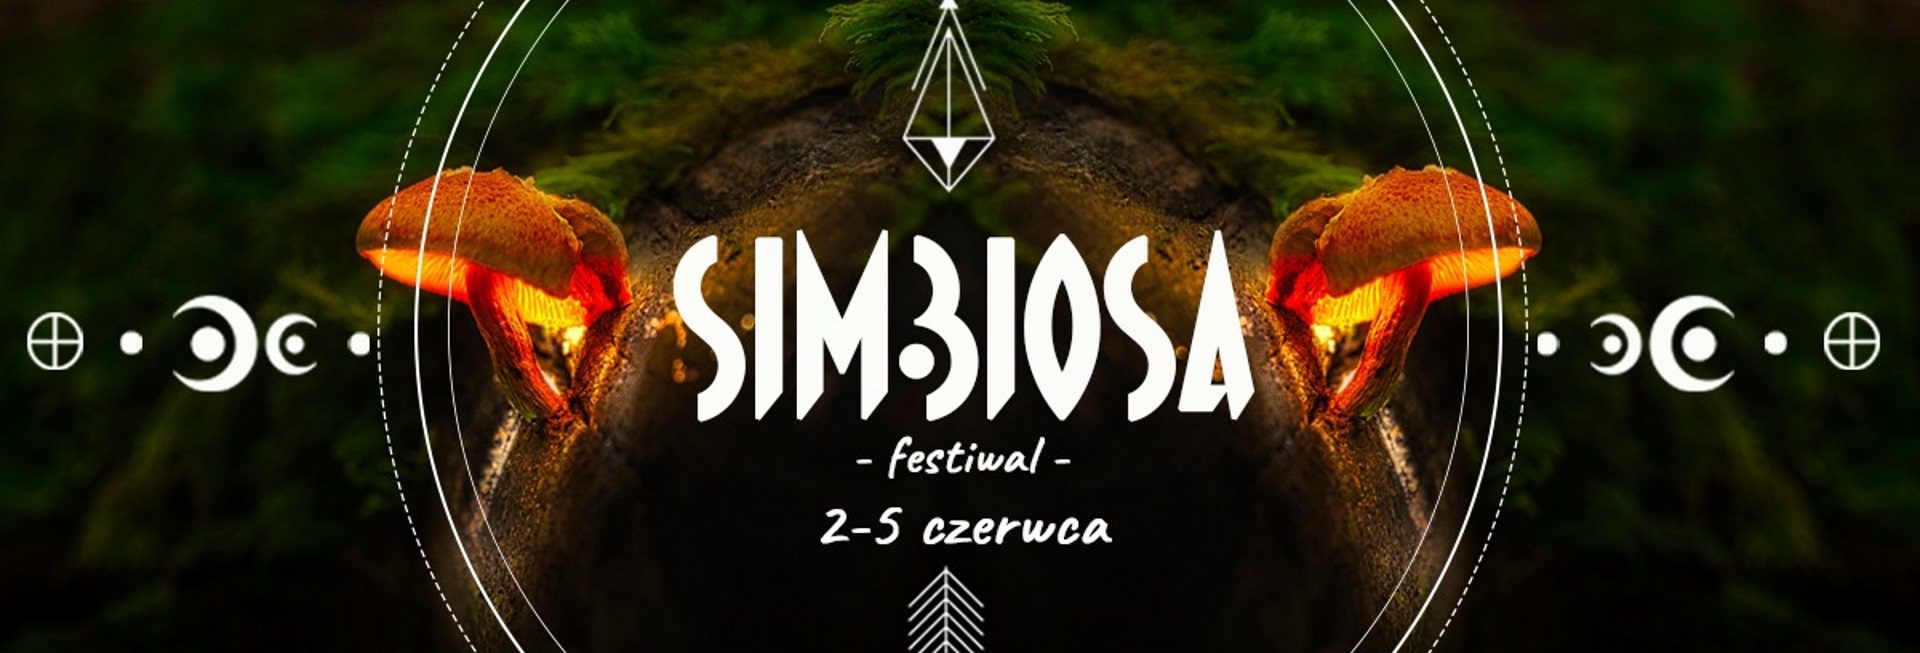 Plakat graficzny zapraszający do miejscowości Warchały na Festiwal Simbiosa Warchały 2022.